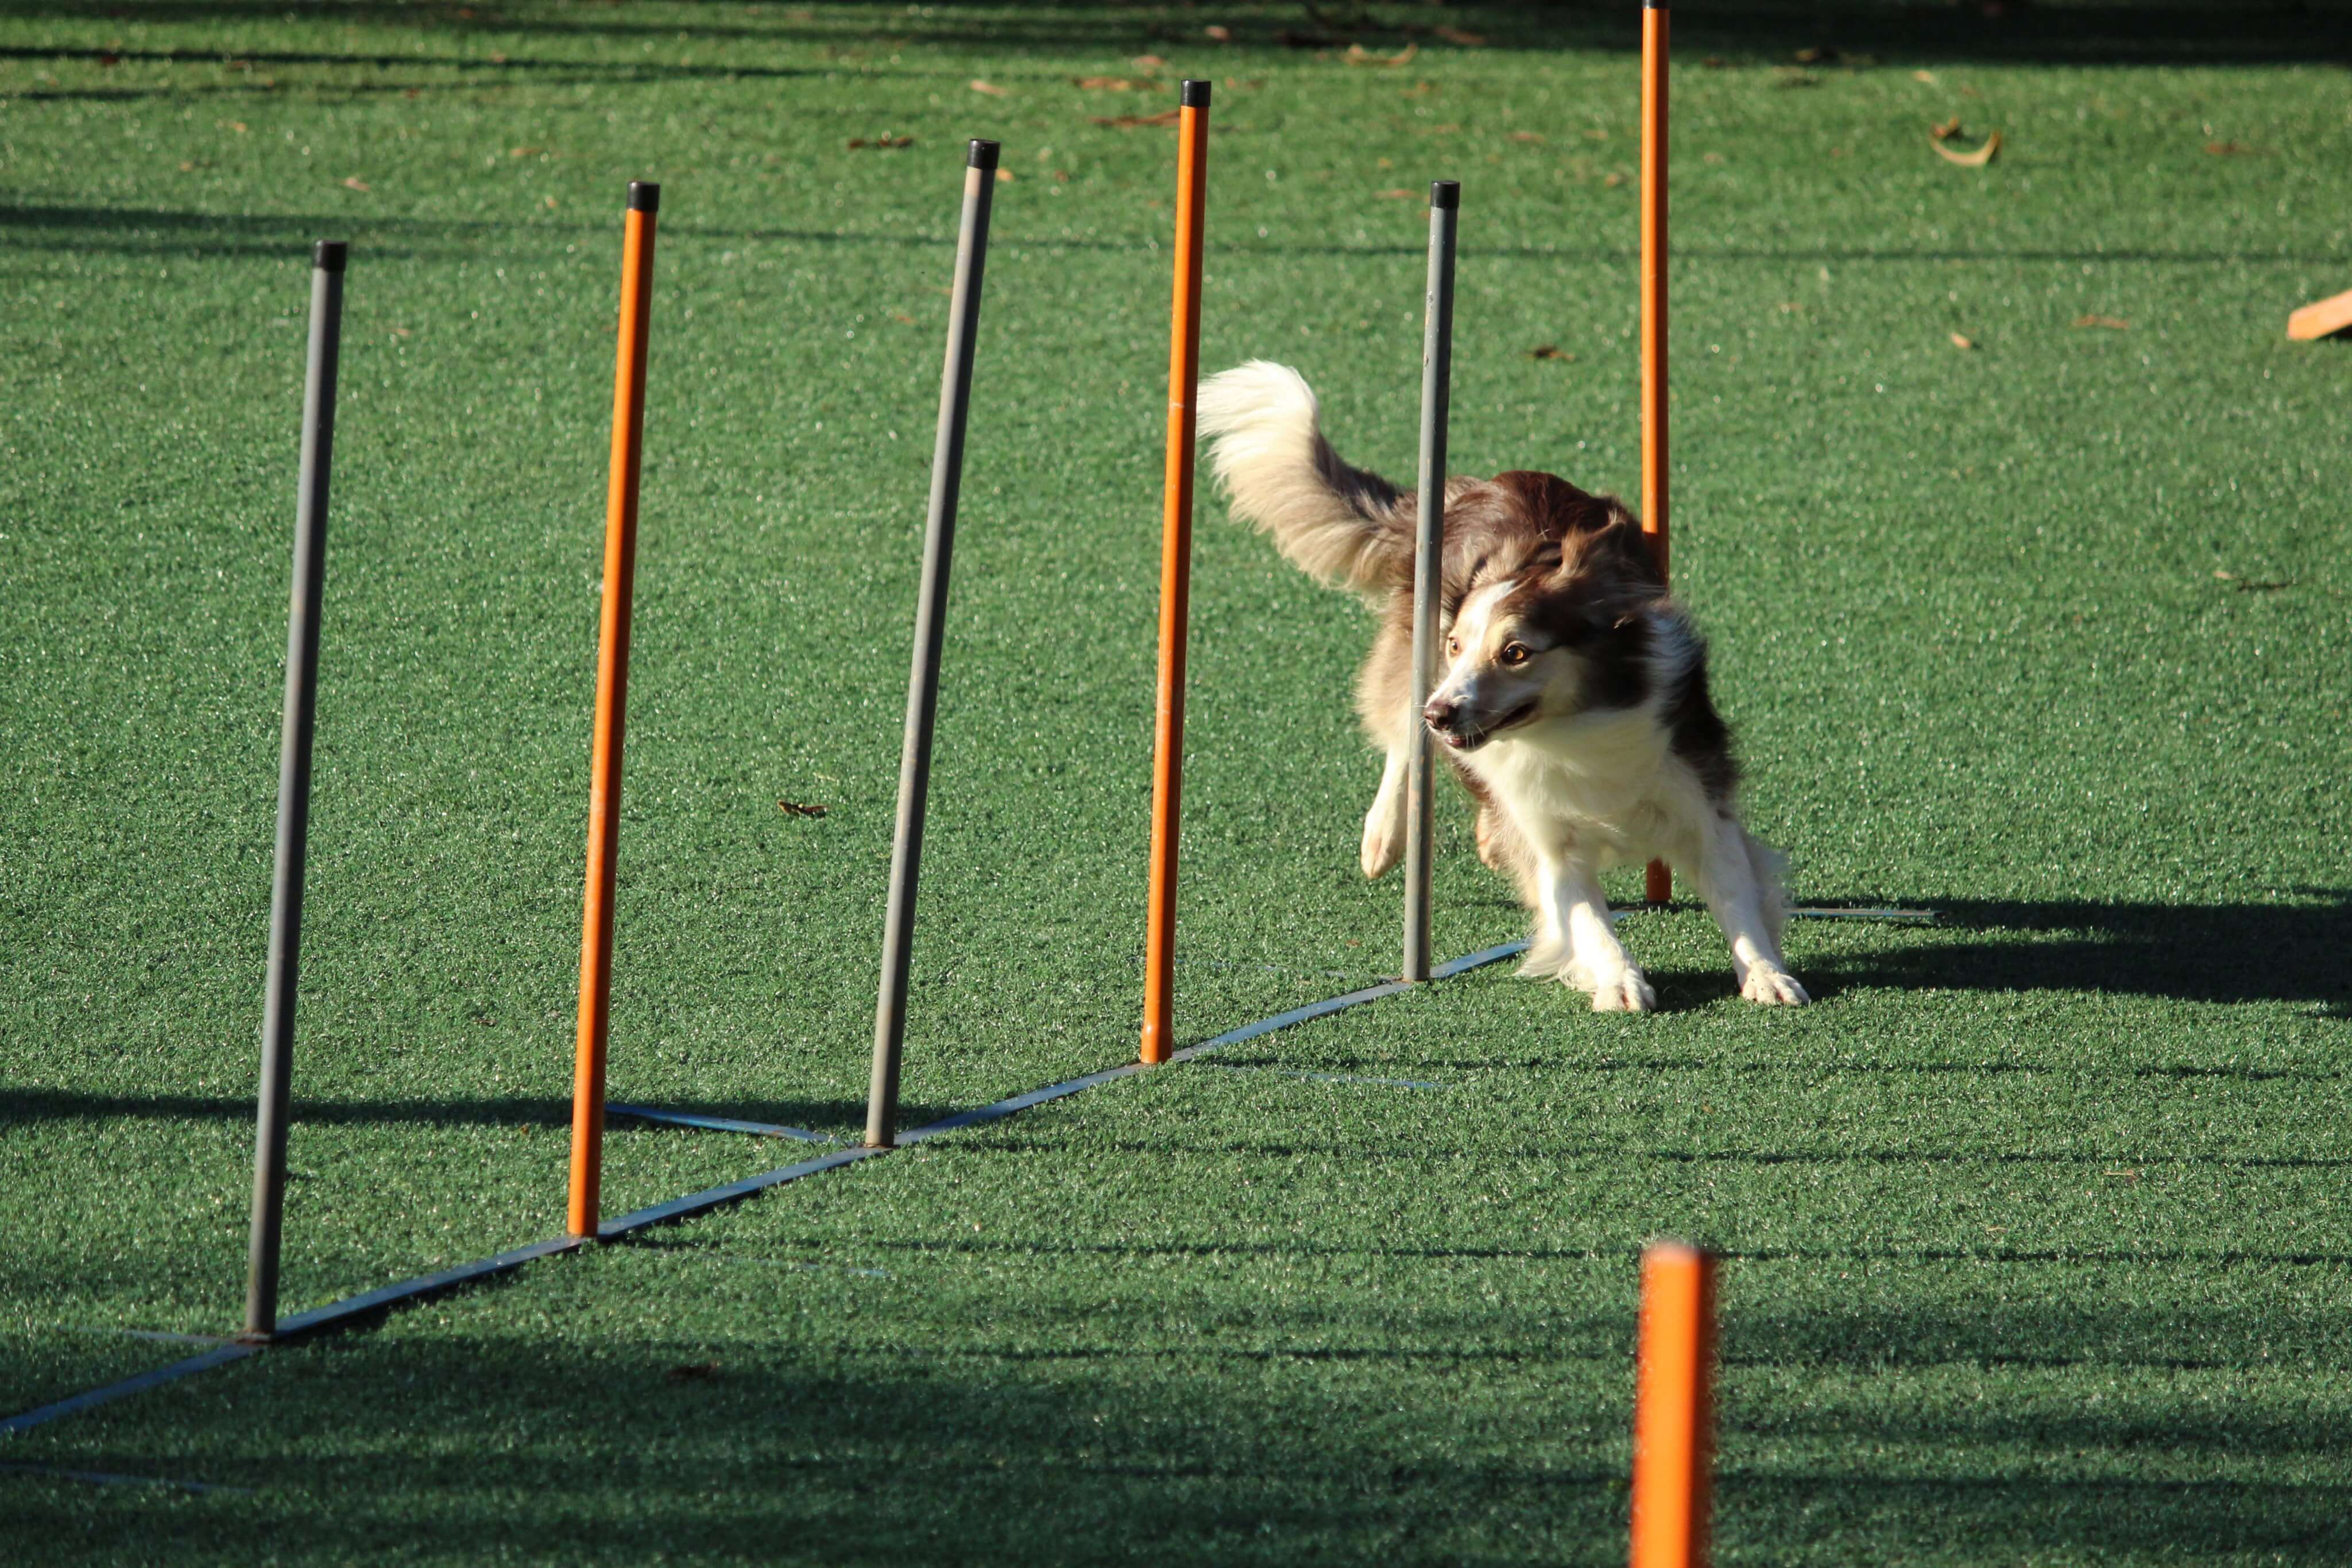 Ein Hund mit braunem und weißem Fell schlängelt sich während einer Agility-Übung auf einer Rasenfläche durch eine Reihe vertikaler Stangen.